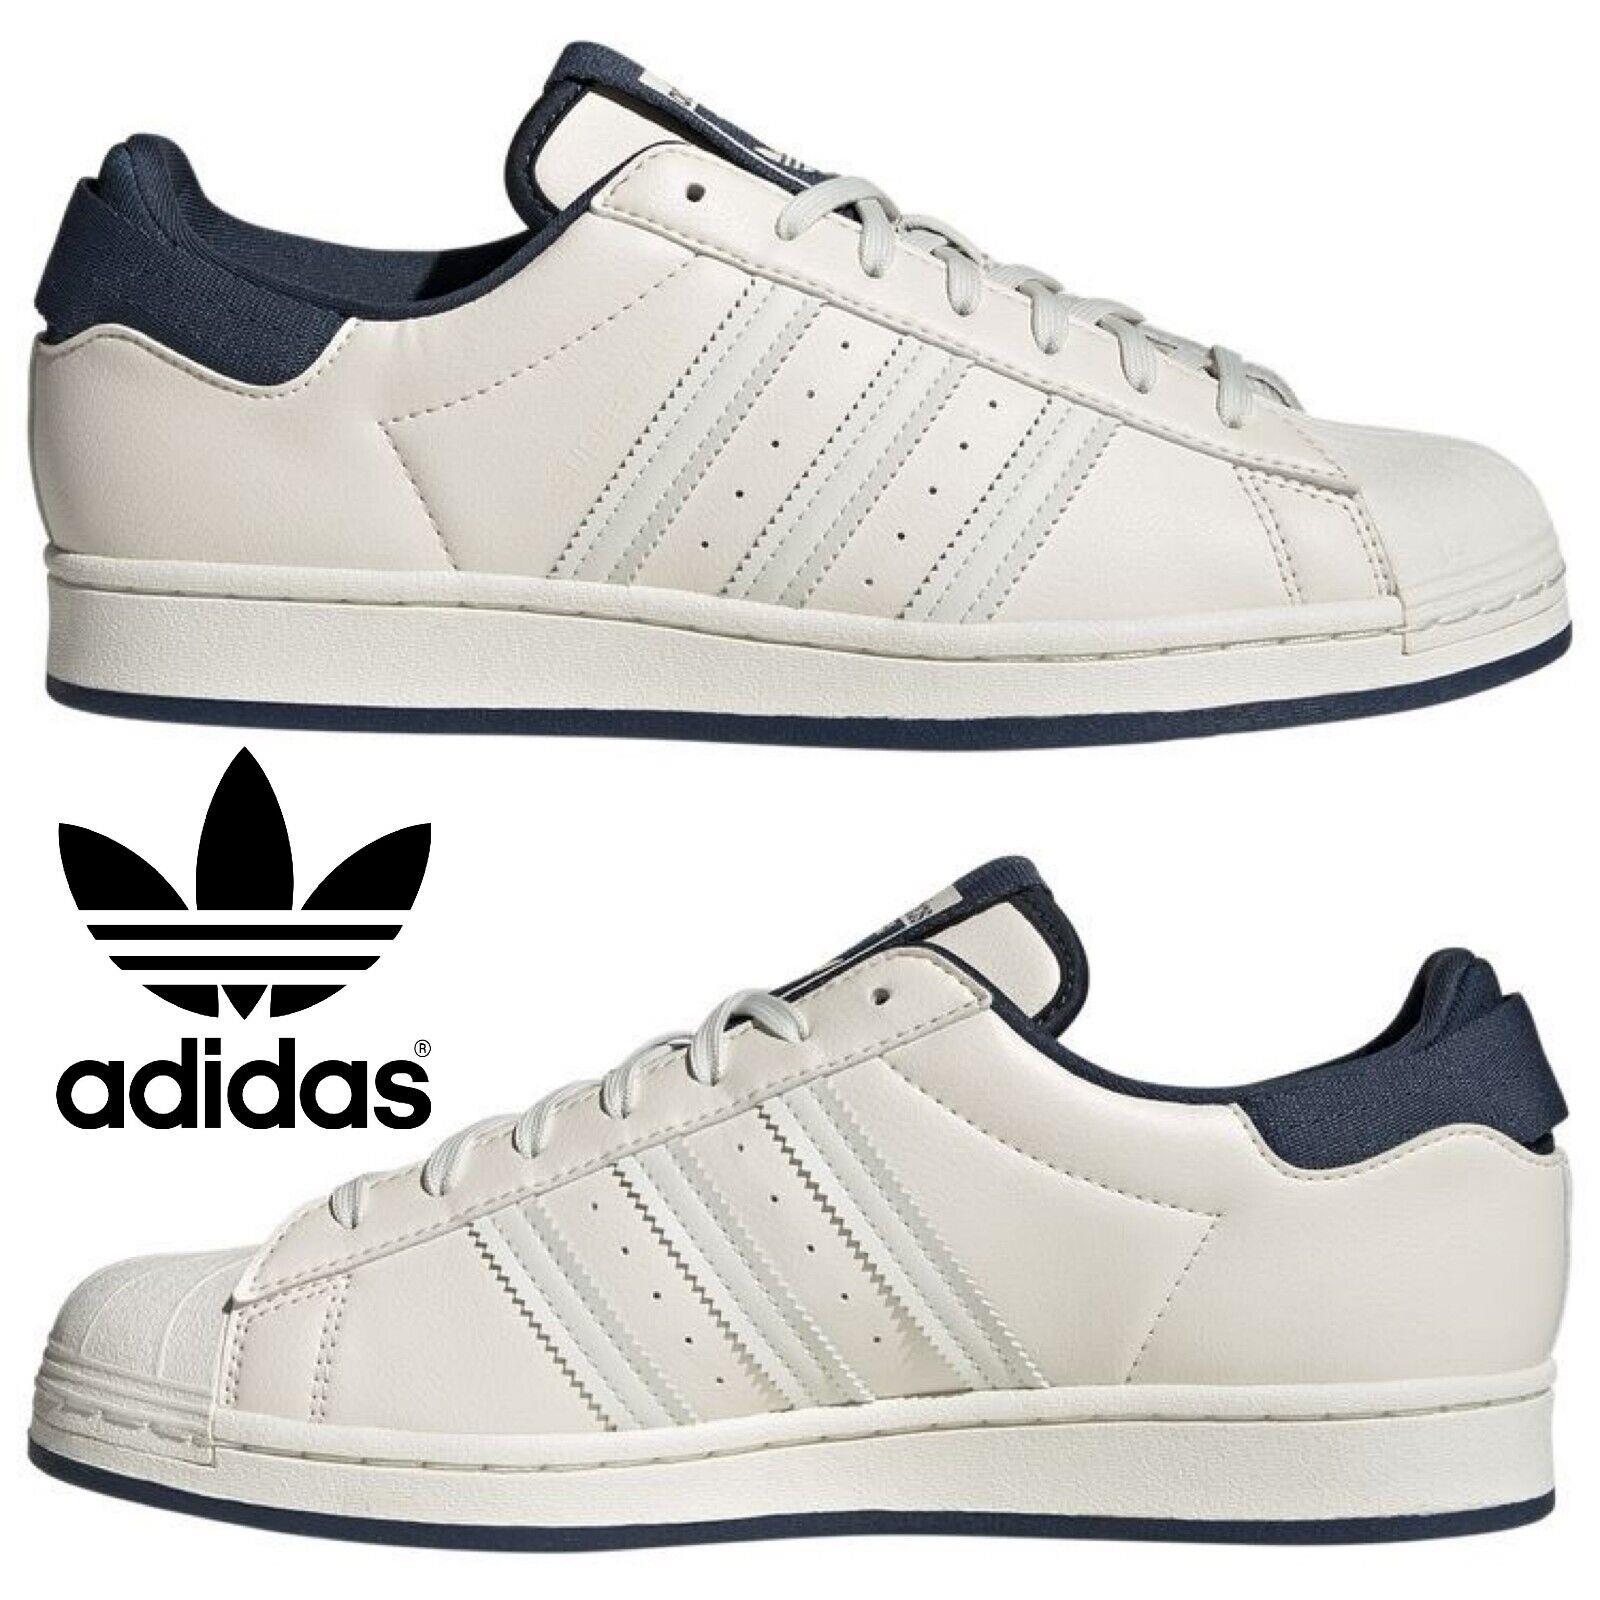 Adidas Originals Superstar Men`s Sneakers Comfort Sport Casual Walking Shoes